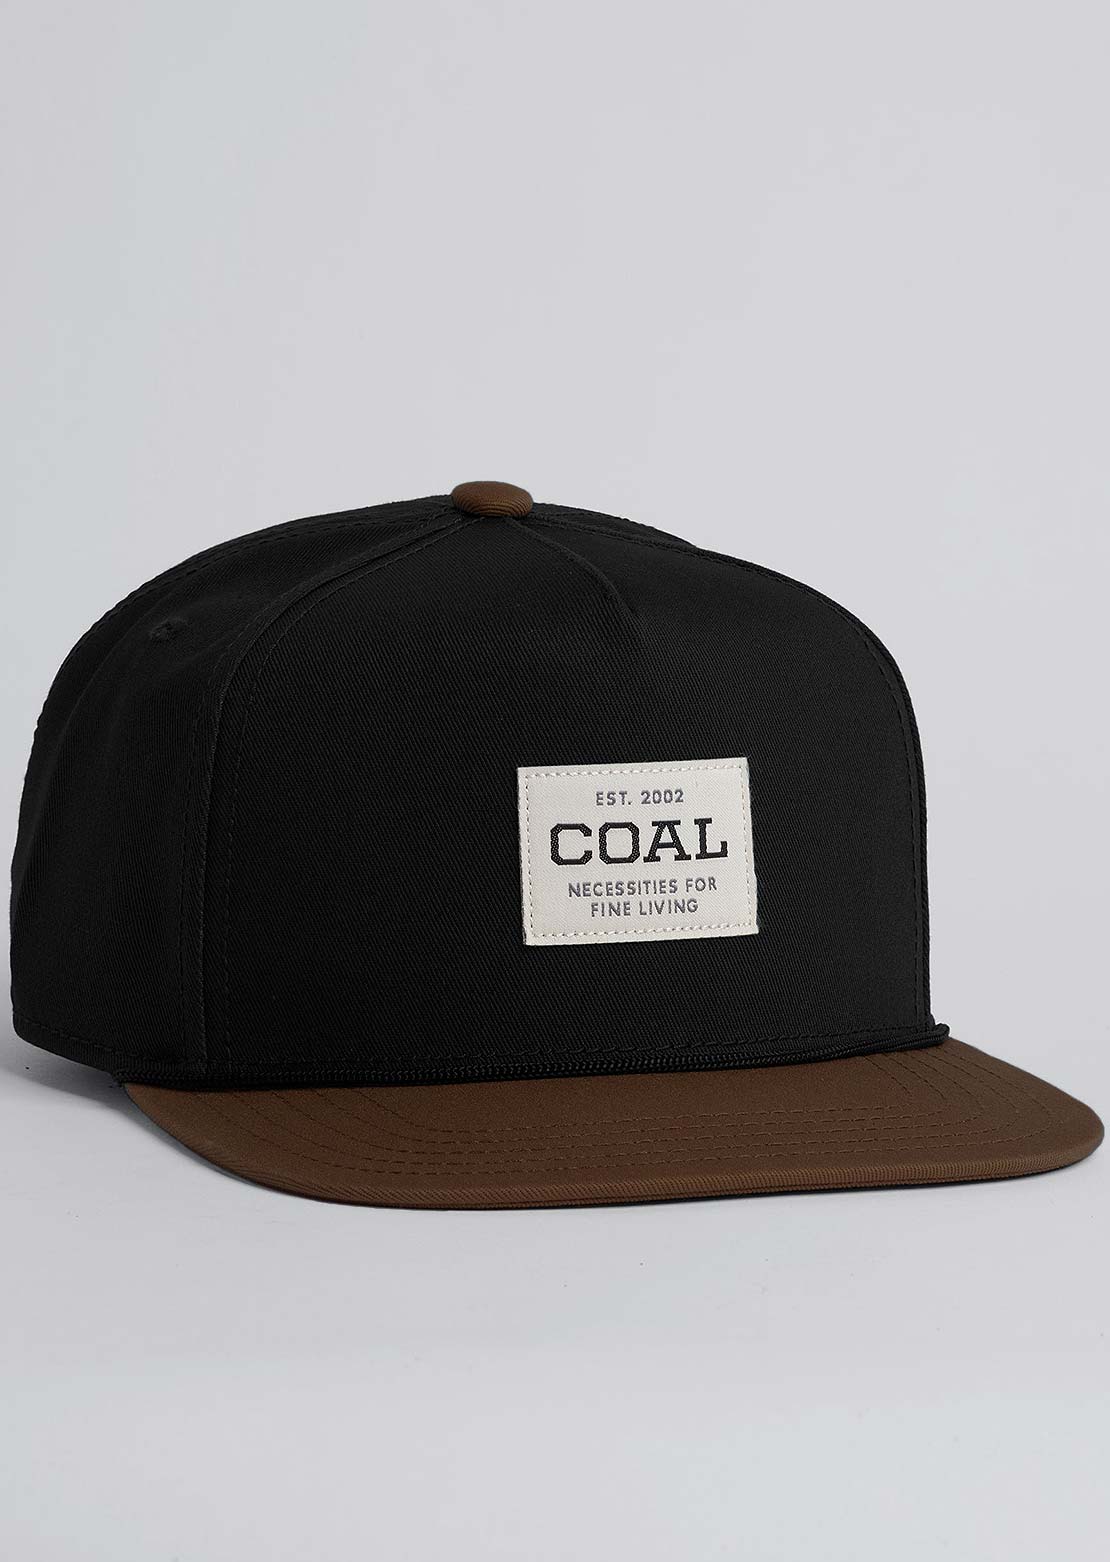 Coal Uniform Cap Black/Brown